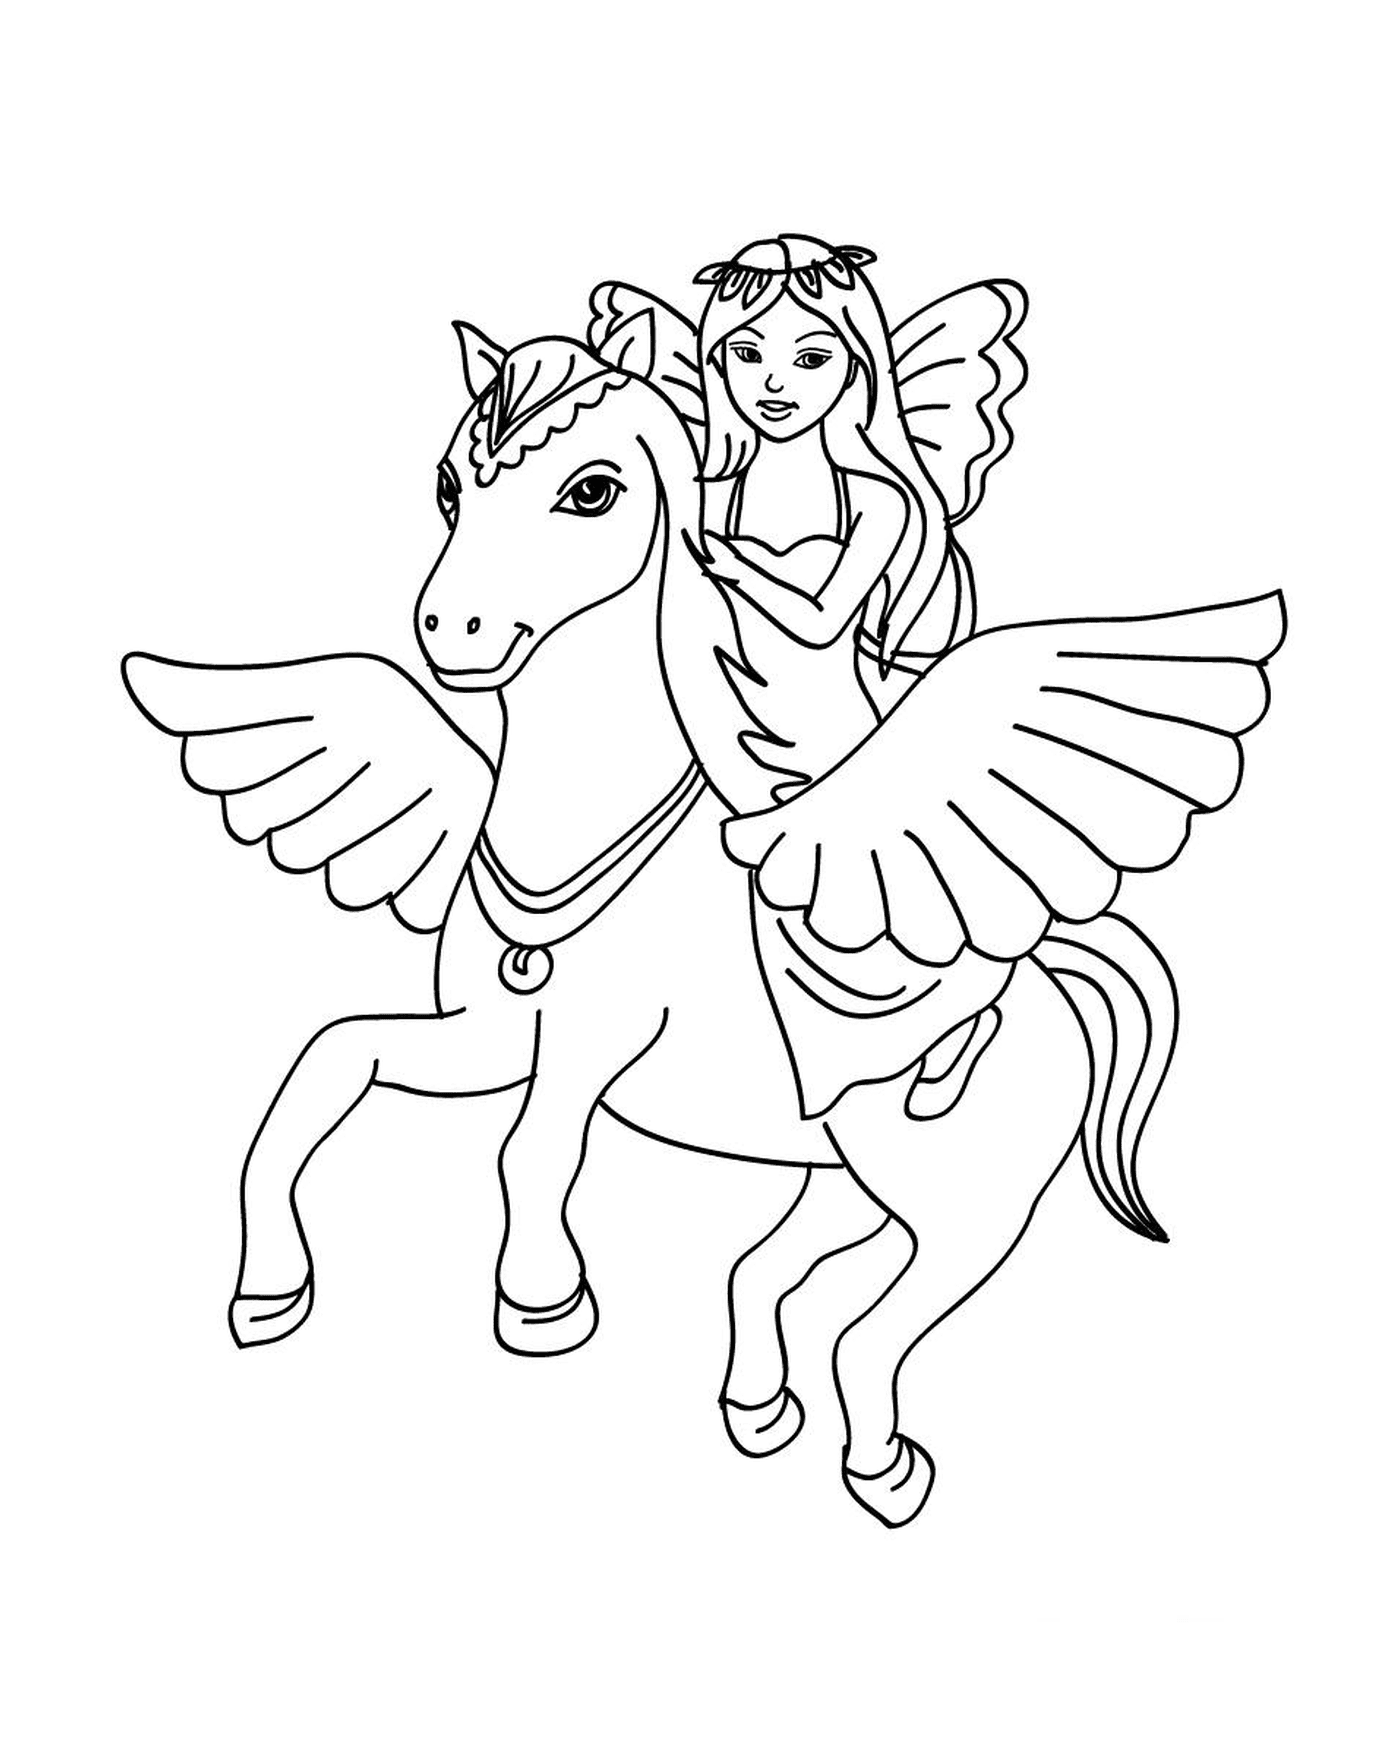  A fairy riding on a pony 